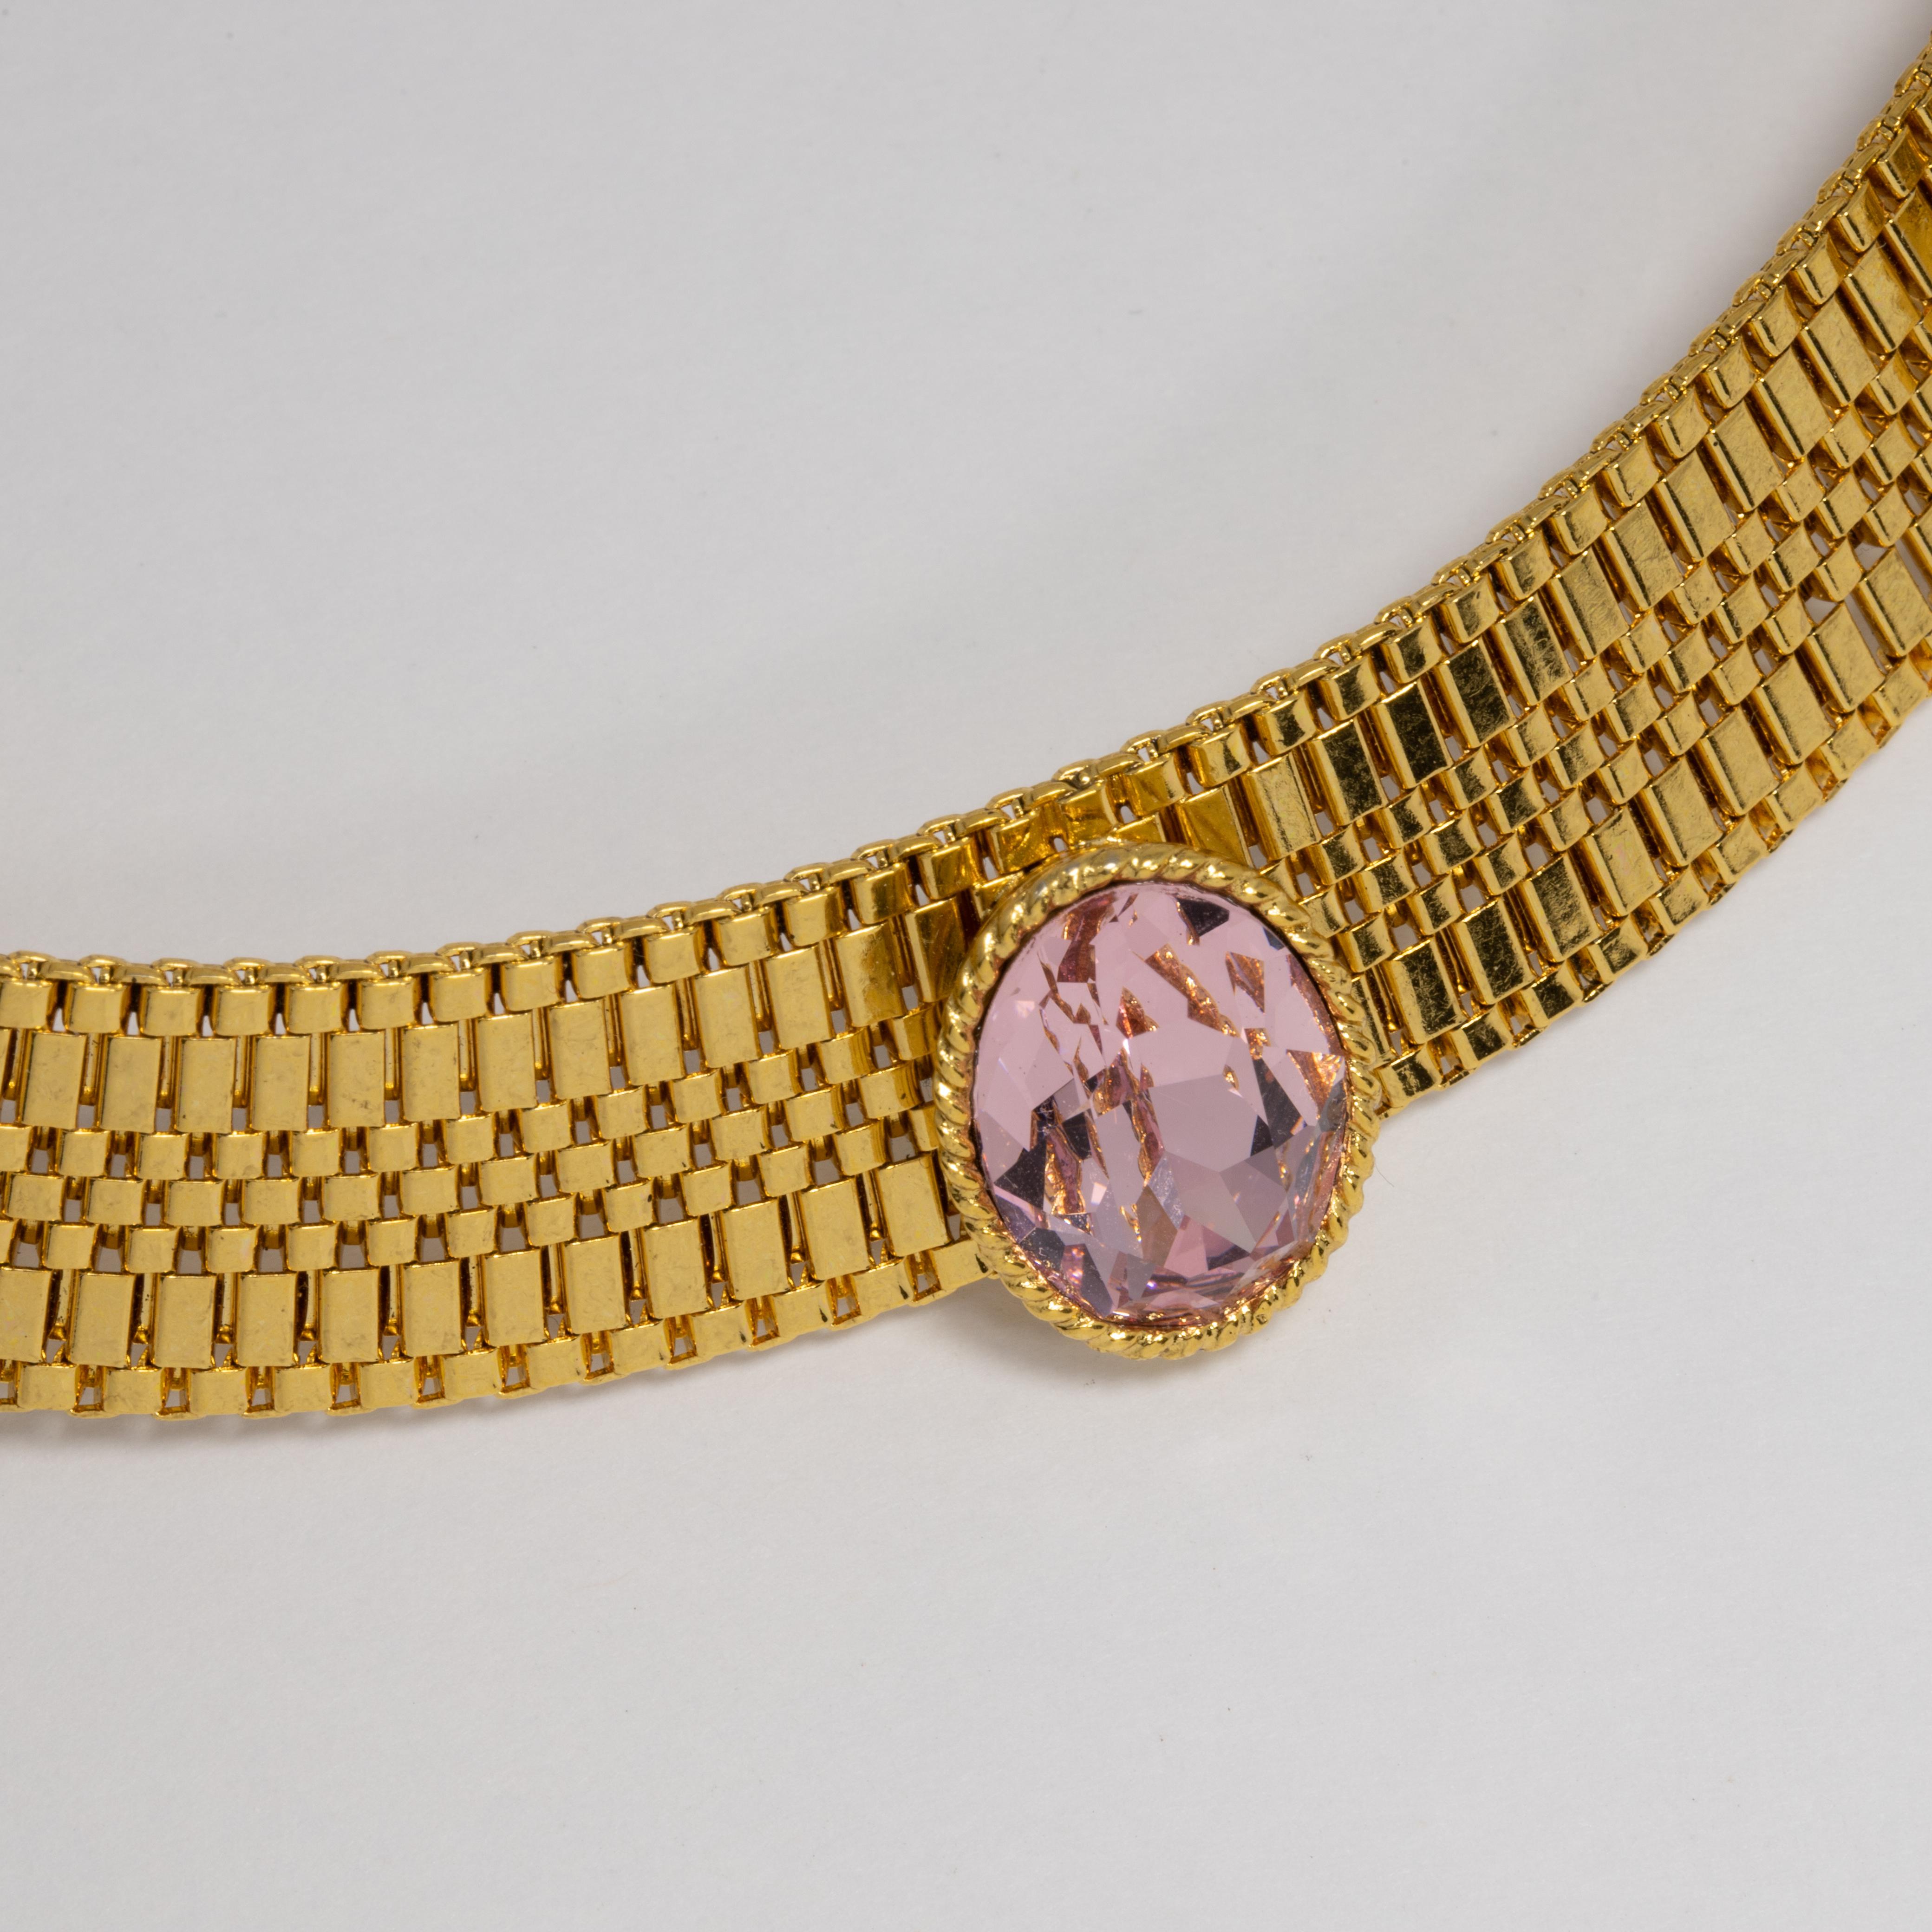 hasli style necklace